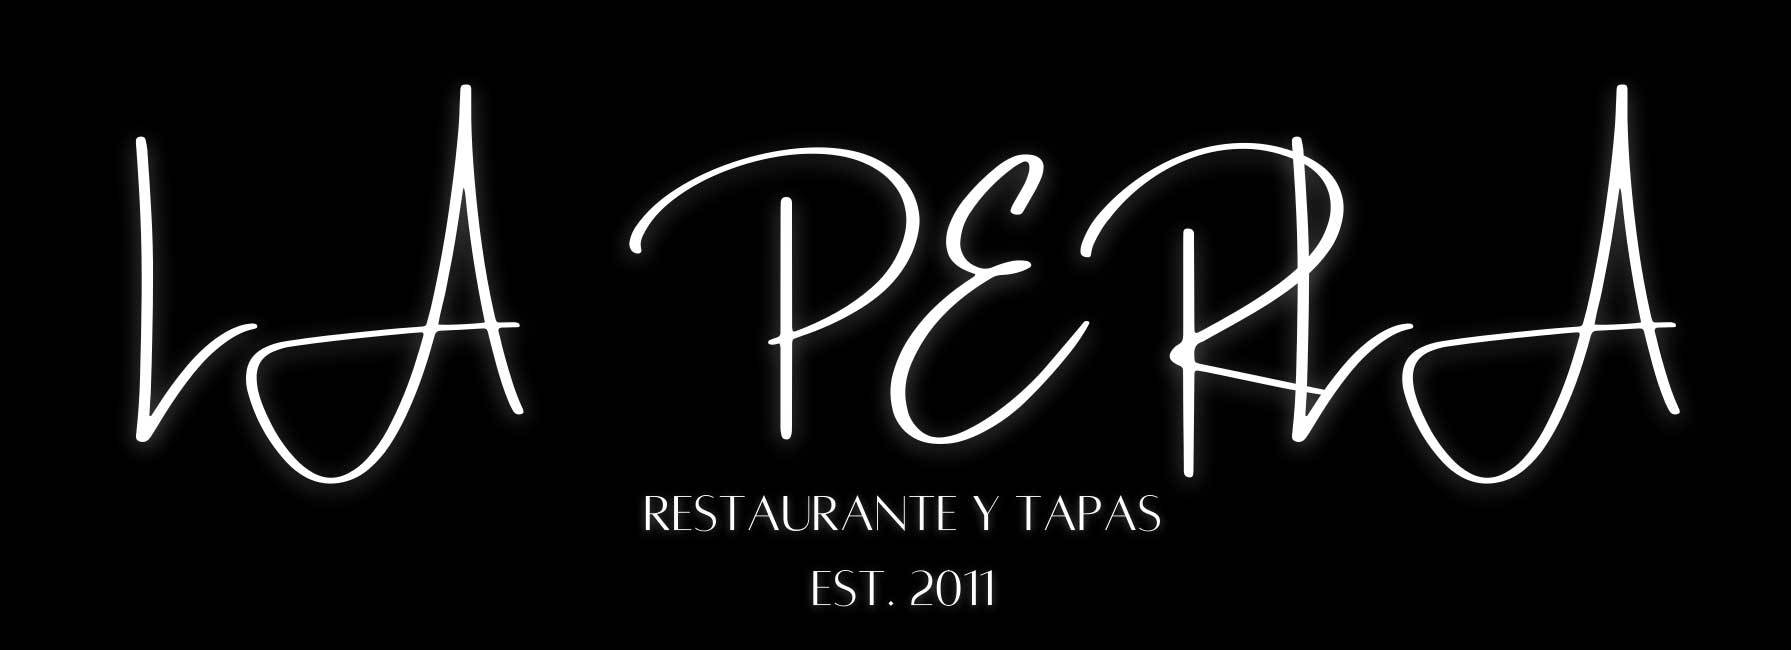 La Perla - Tapas Restaurant, Bath